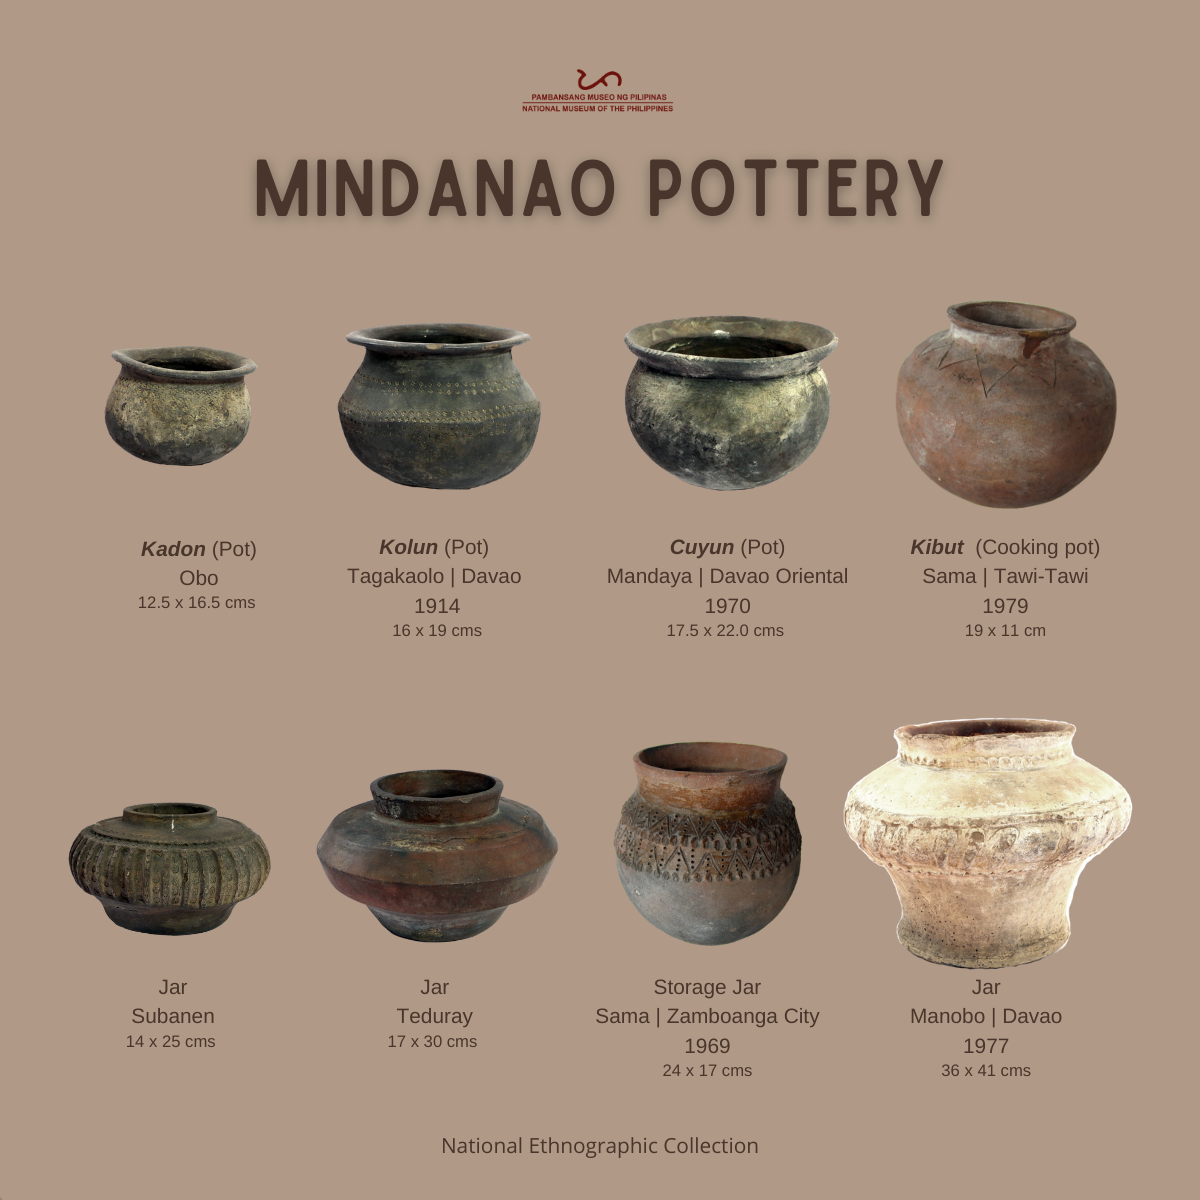 Mindanao Pottery